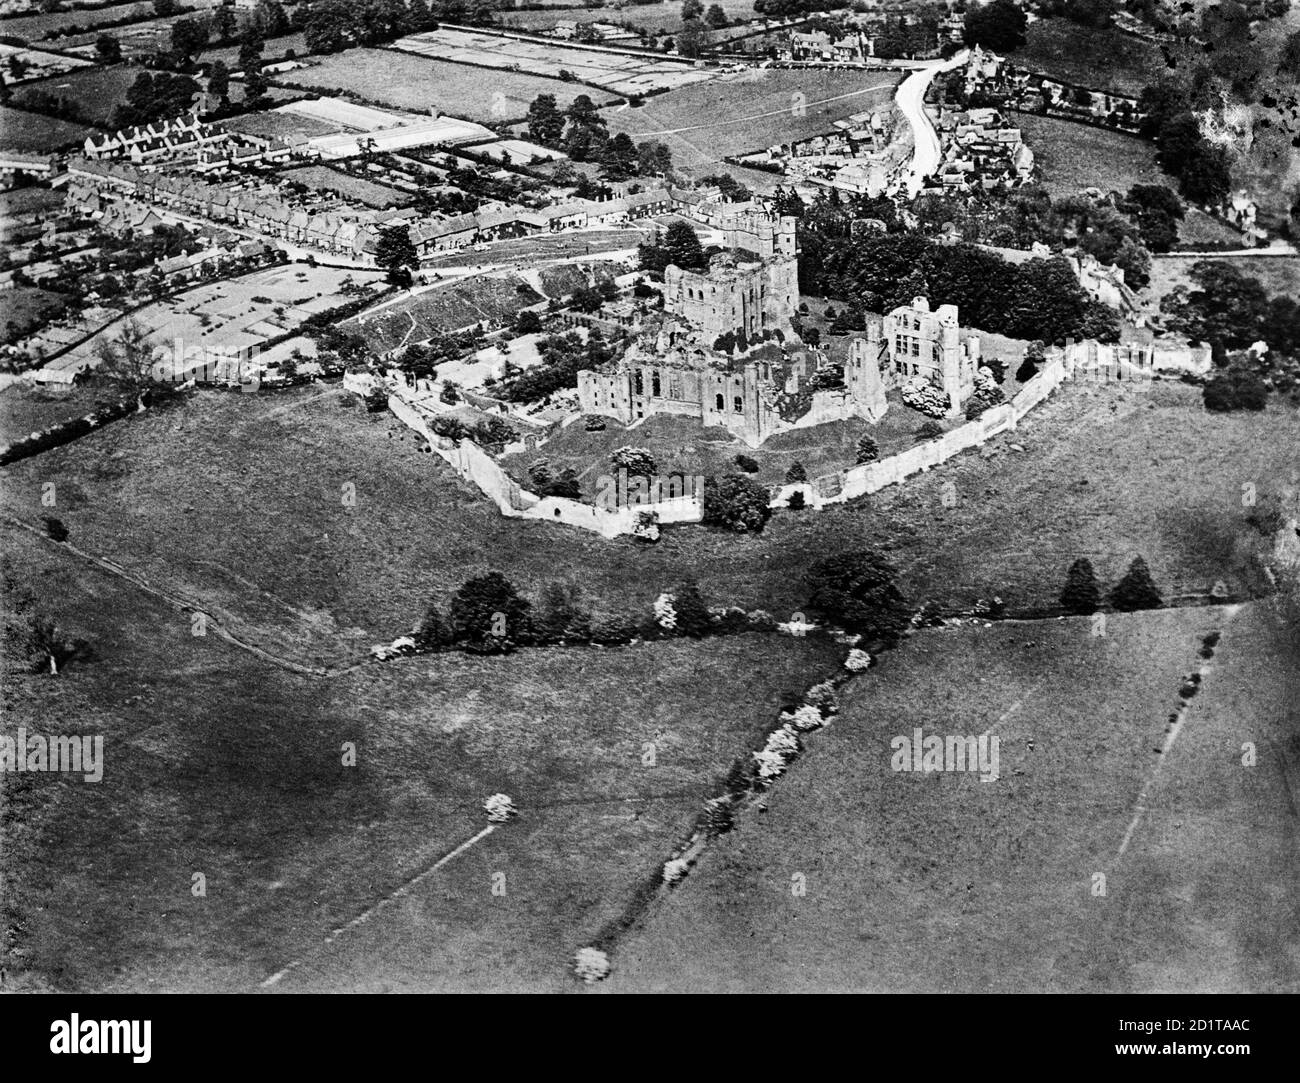 KENILWORTH CASTLE, Warwickshire. Luftaufnahme des Schlosses. Fotografiert im Jahr 1920. Dieses Bild wird aus einem Kopiernegativ entnommen. Aerofilms Collection (siehe Links). Stockfoto